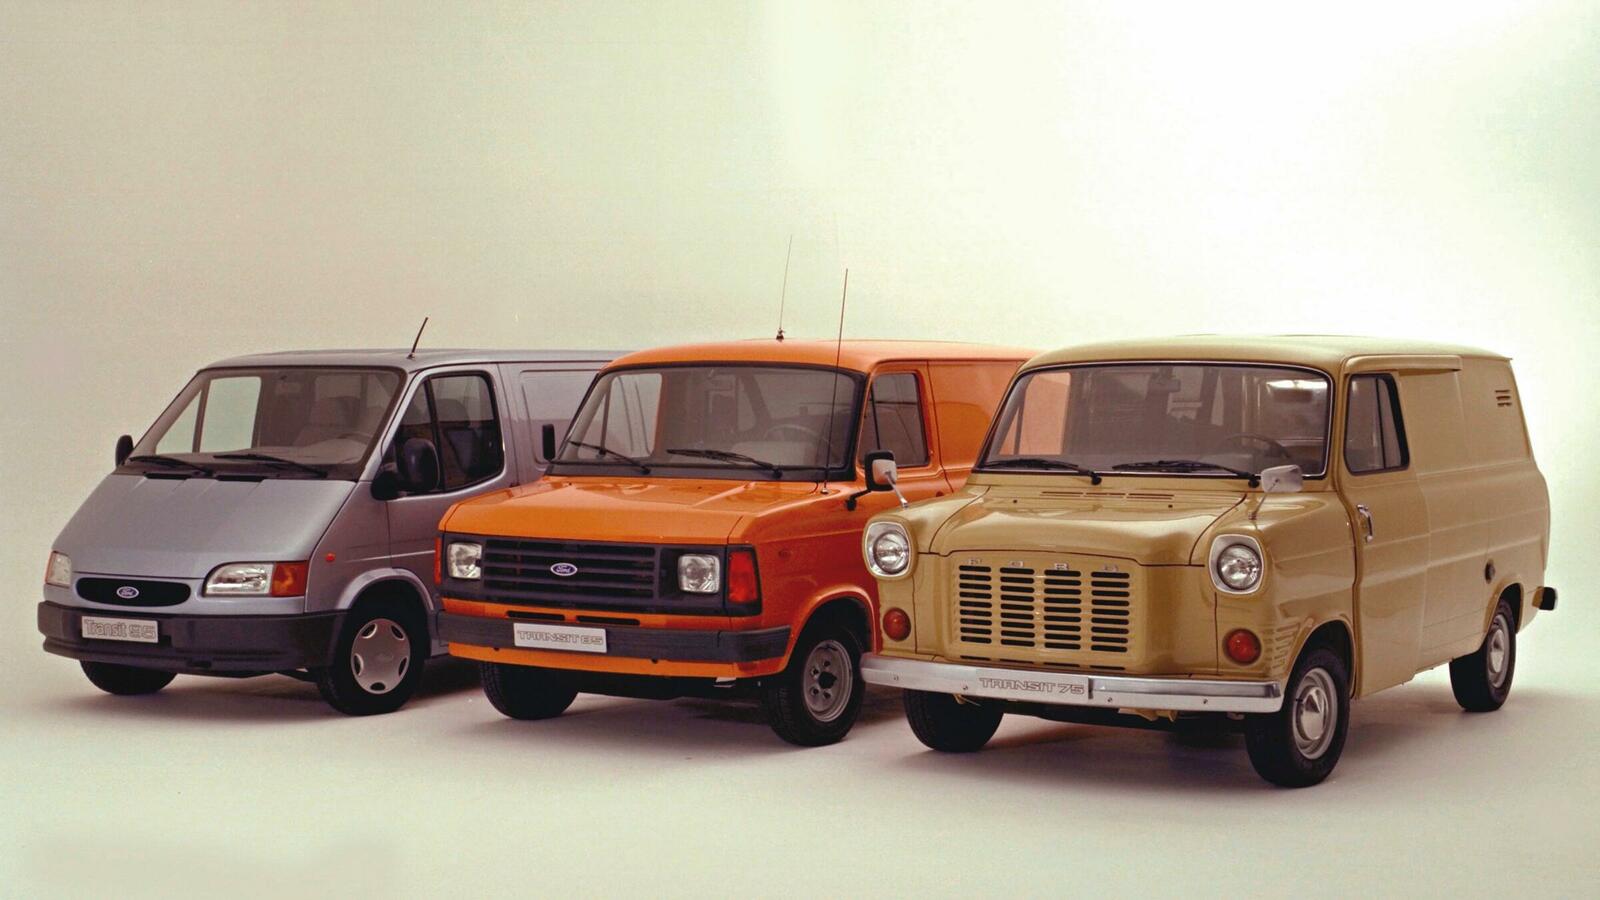  Ford Transit von 1994 (links), von 1978 (Mitte) und von 1972 (rechts).